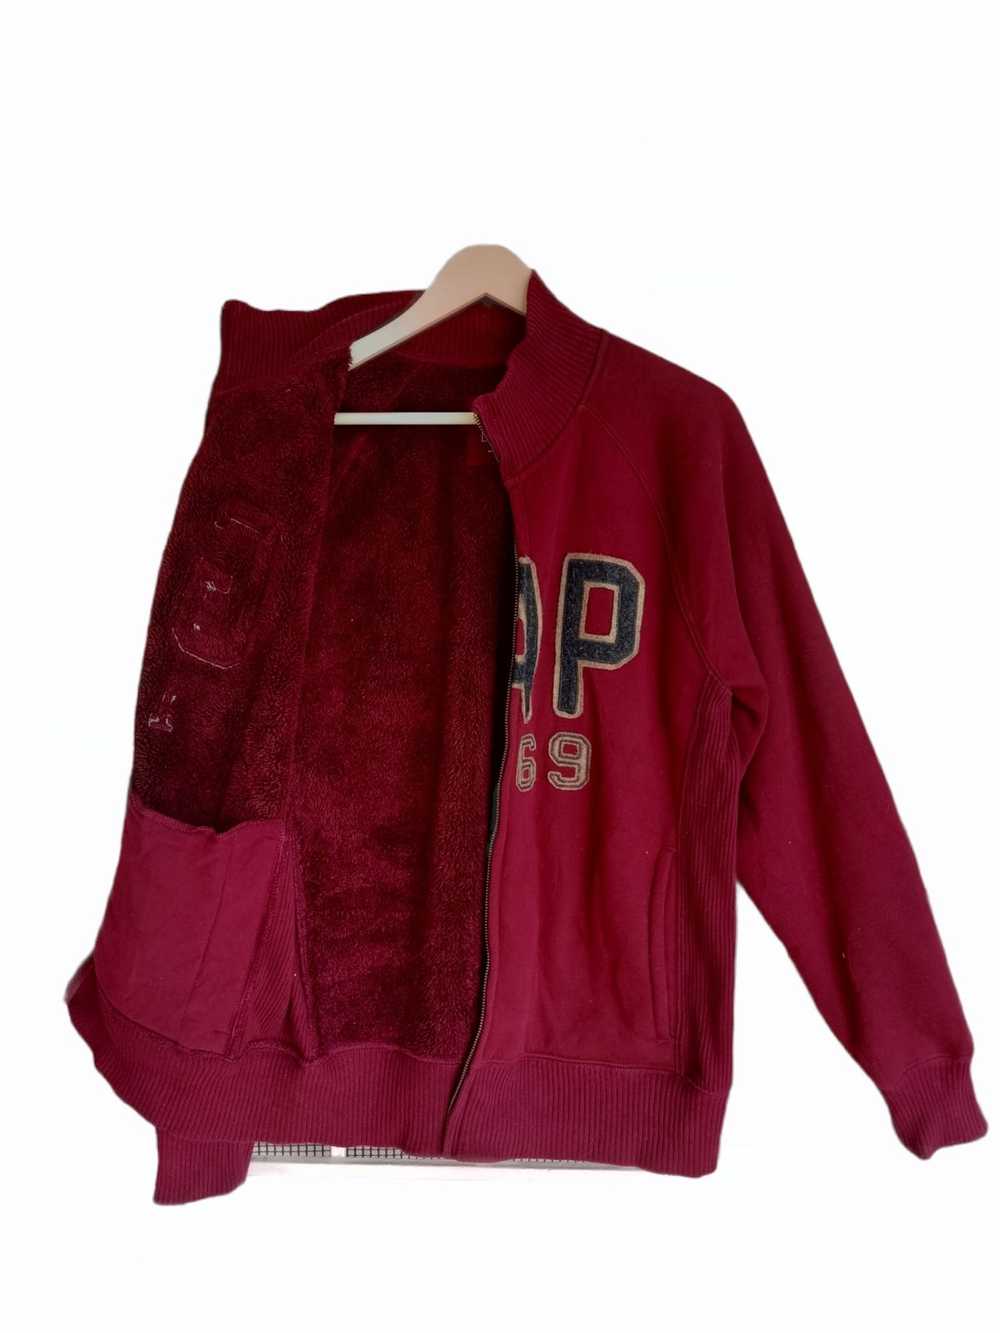 Gap × Streetwear GAP 1969 Fleece Zipper Sweater - image 4